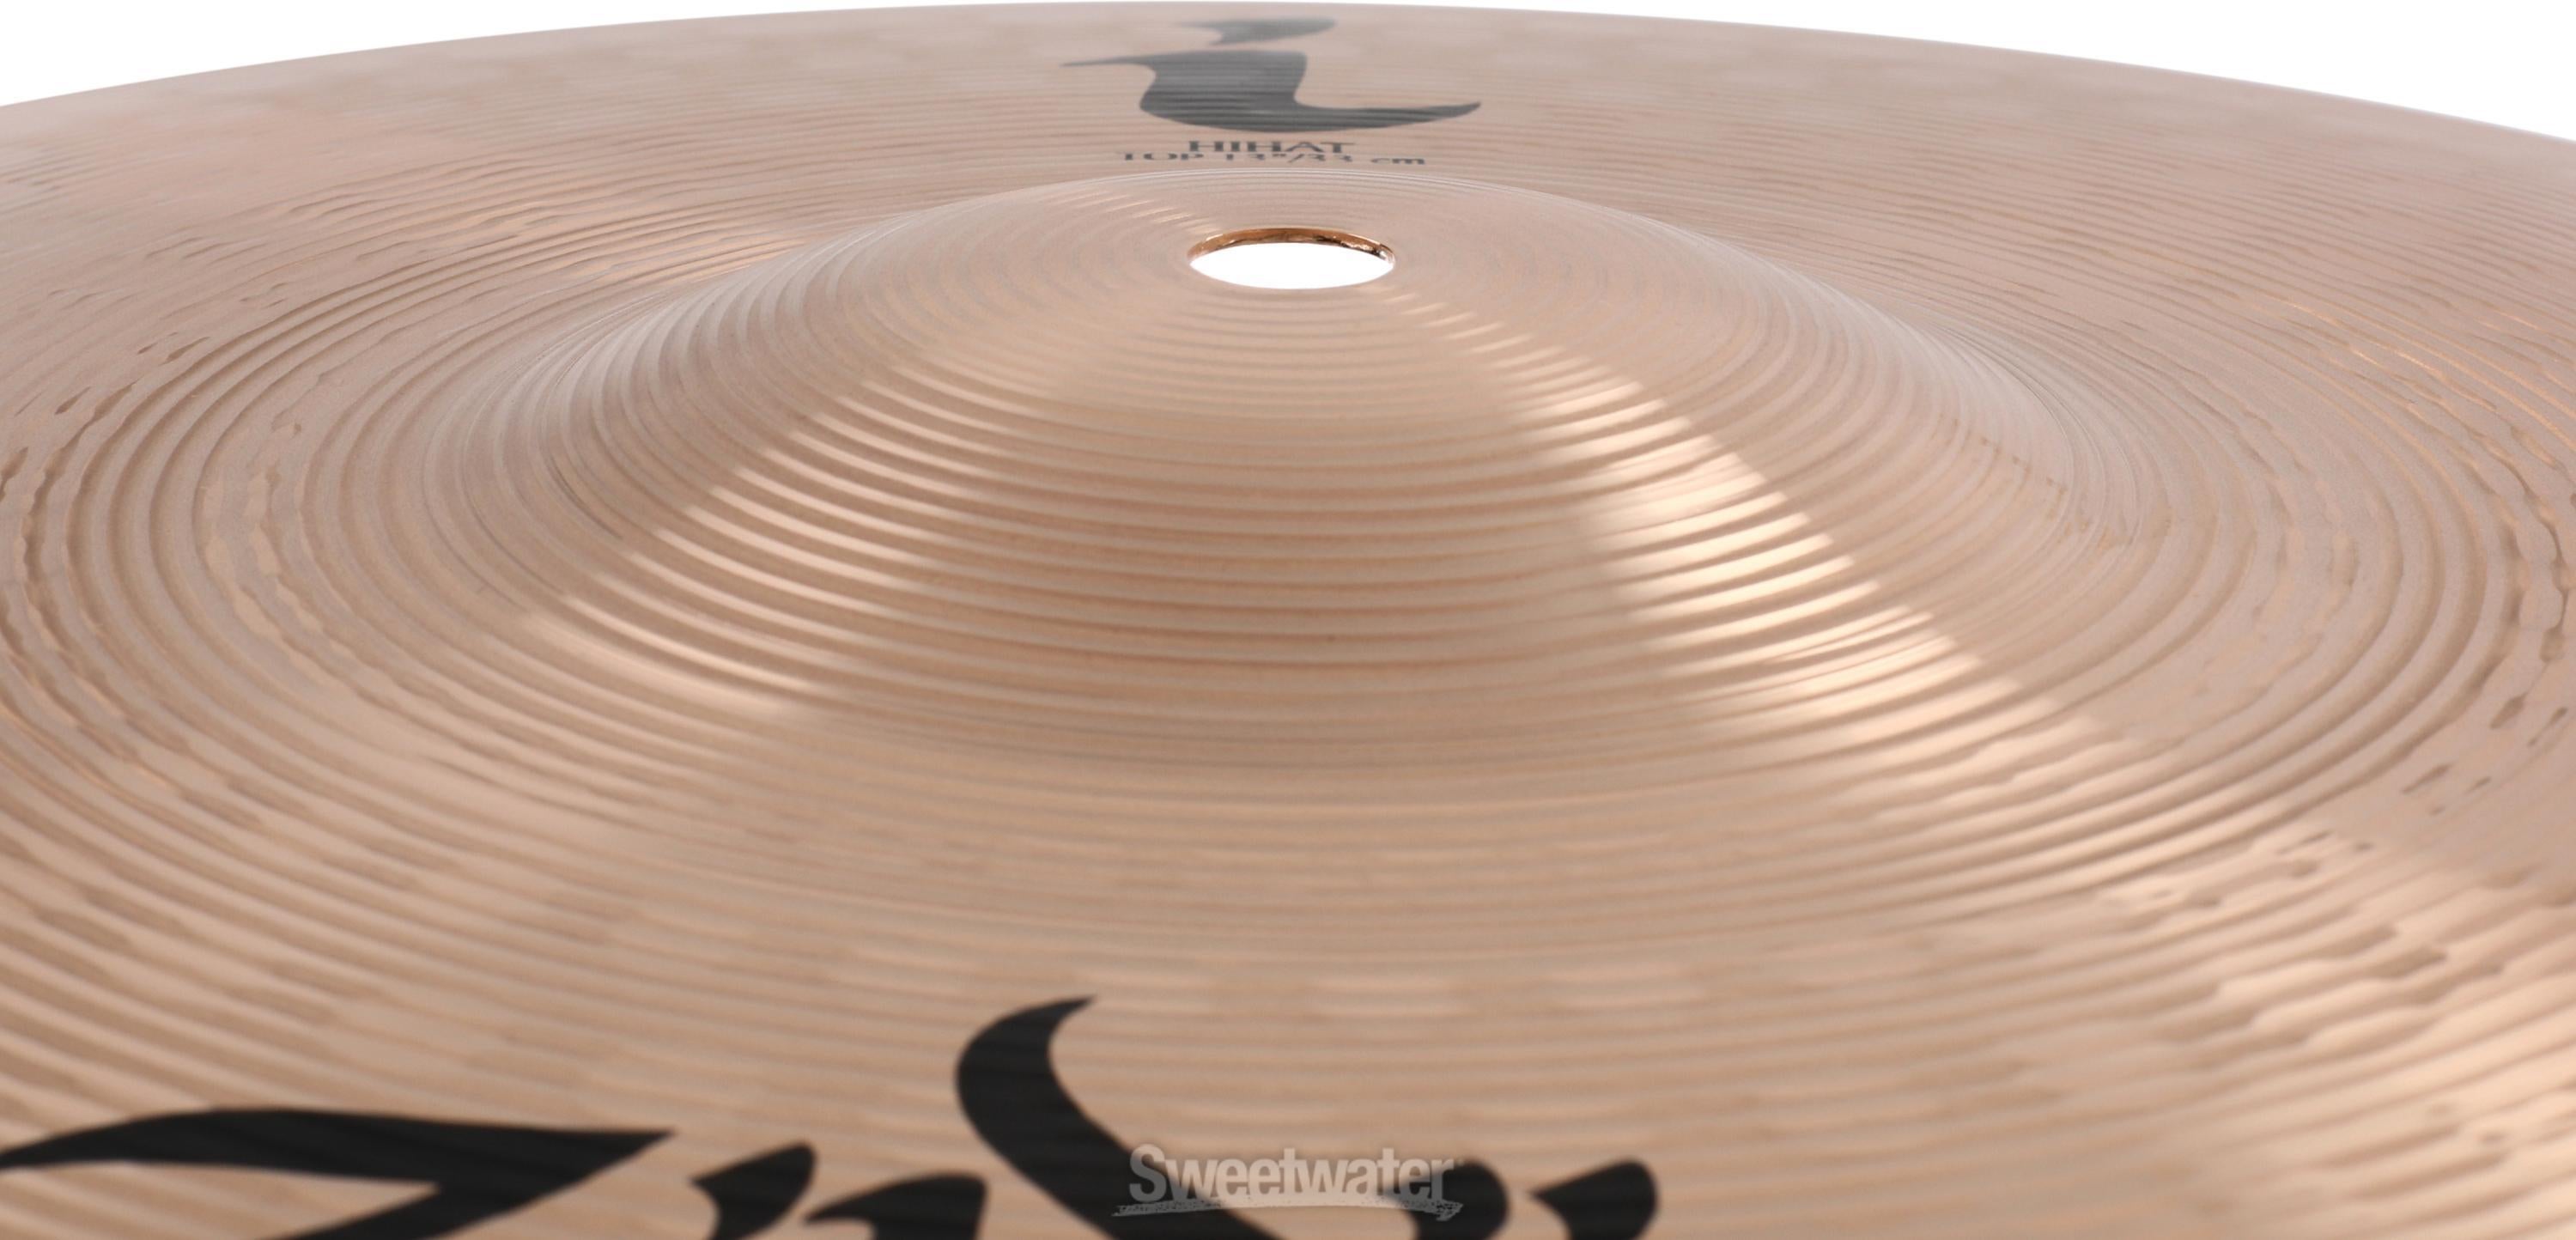 Zildjian 13 inch I Series Hi-hat Cymbals | Sweetwater